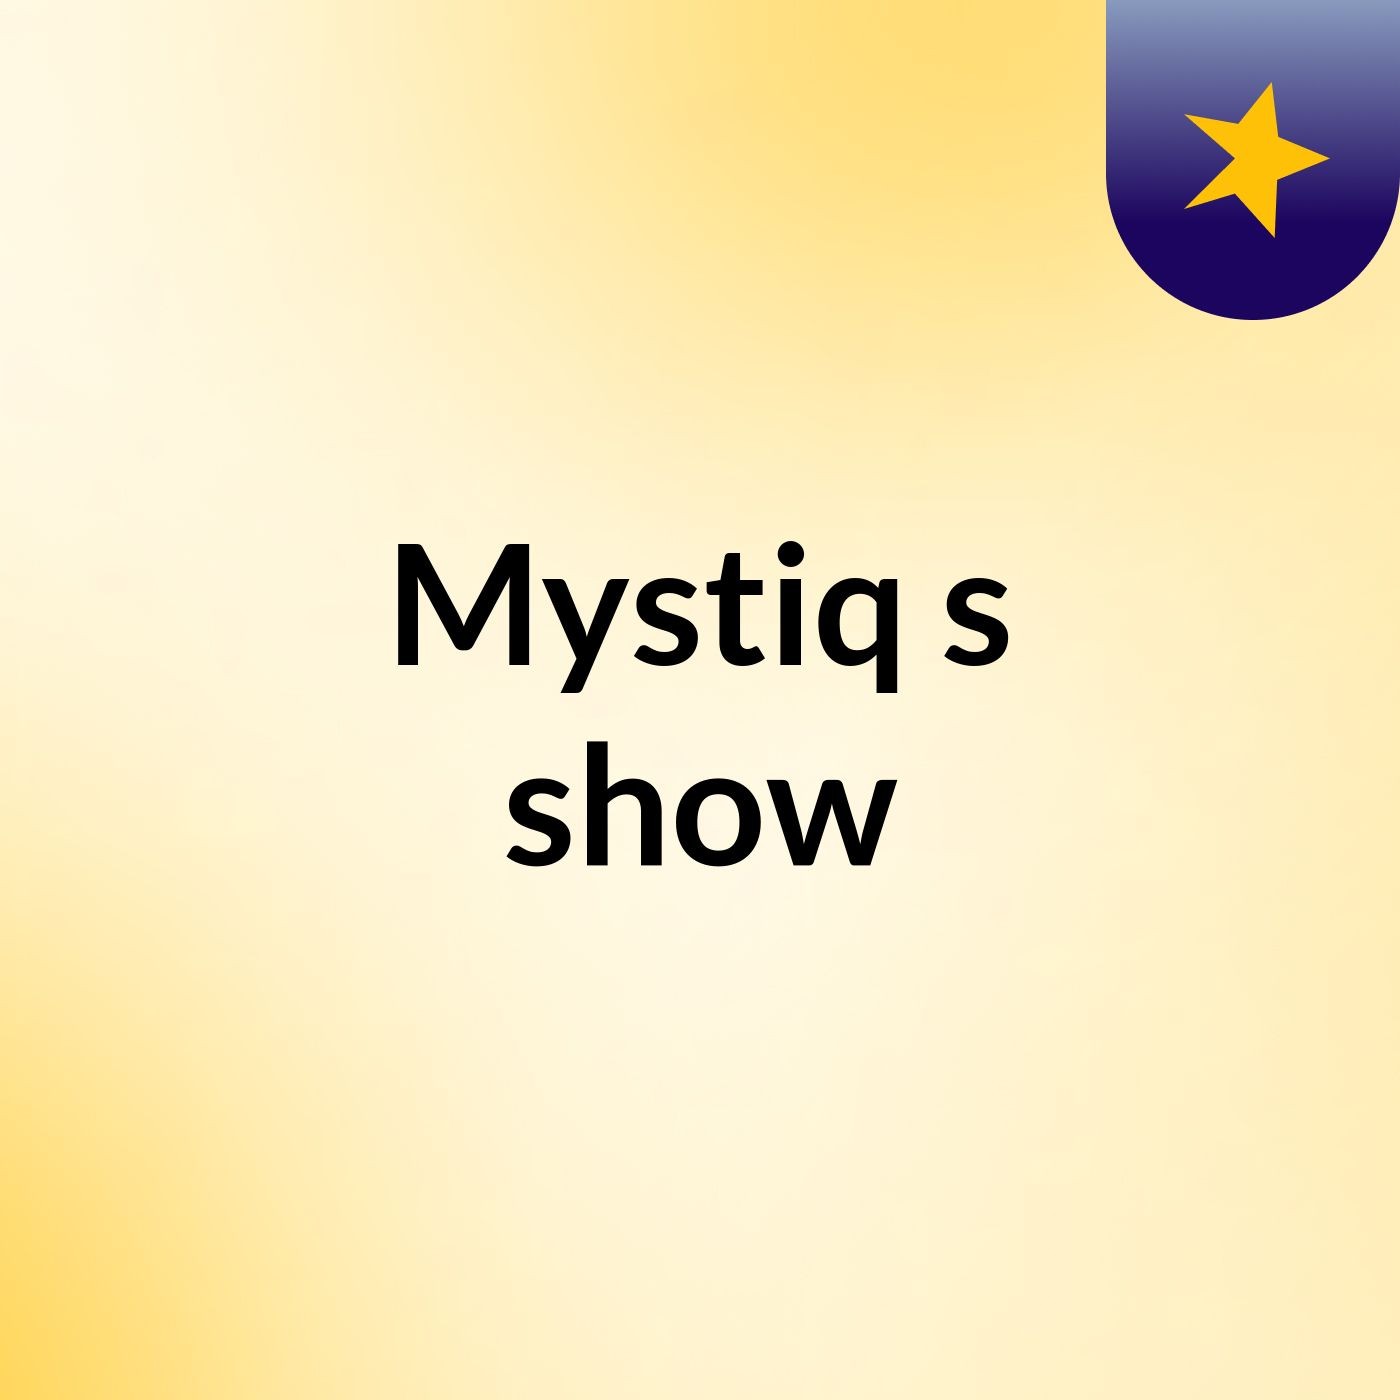 Mystiq's show